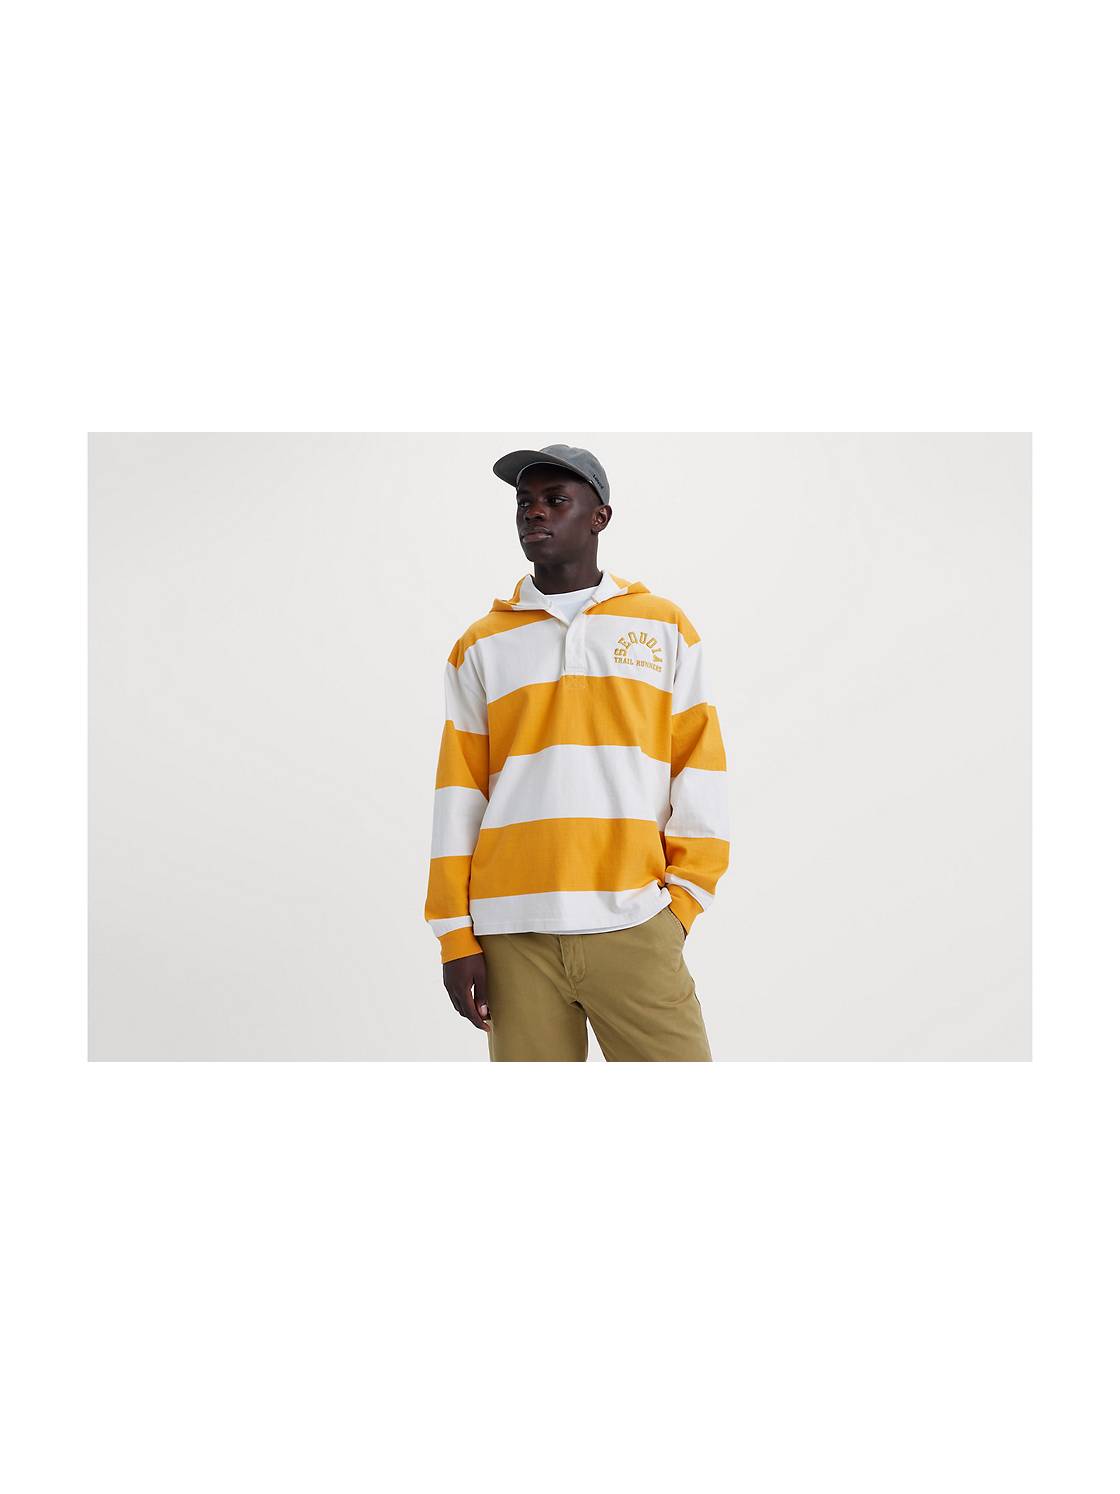 Yellow Hoodies & Sweatshirts